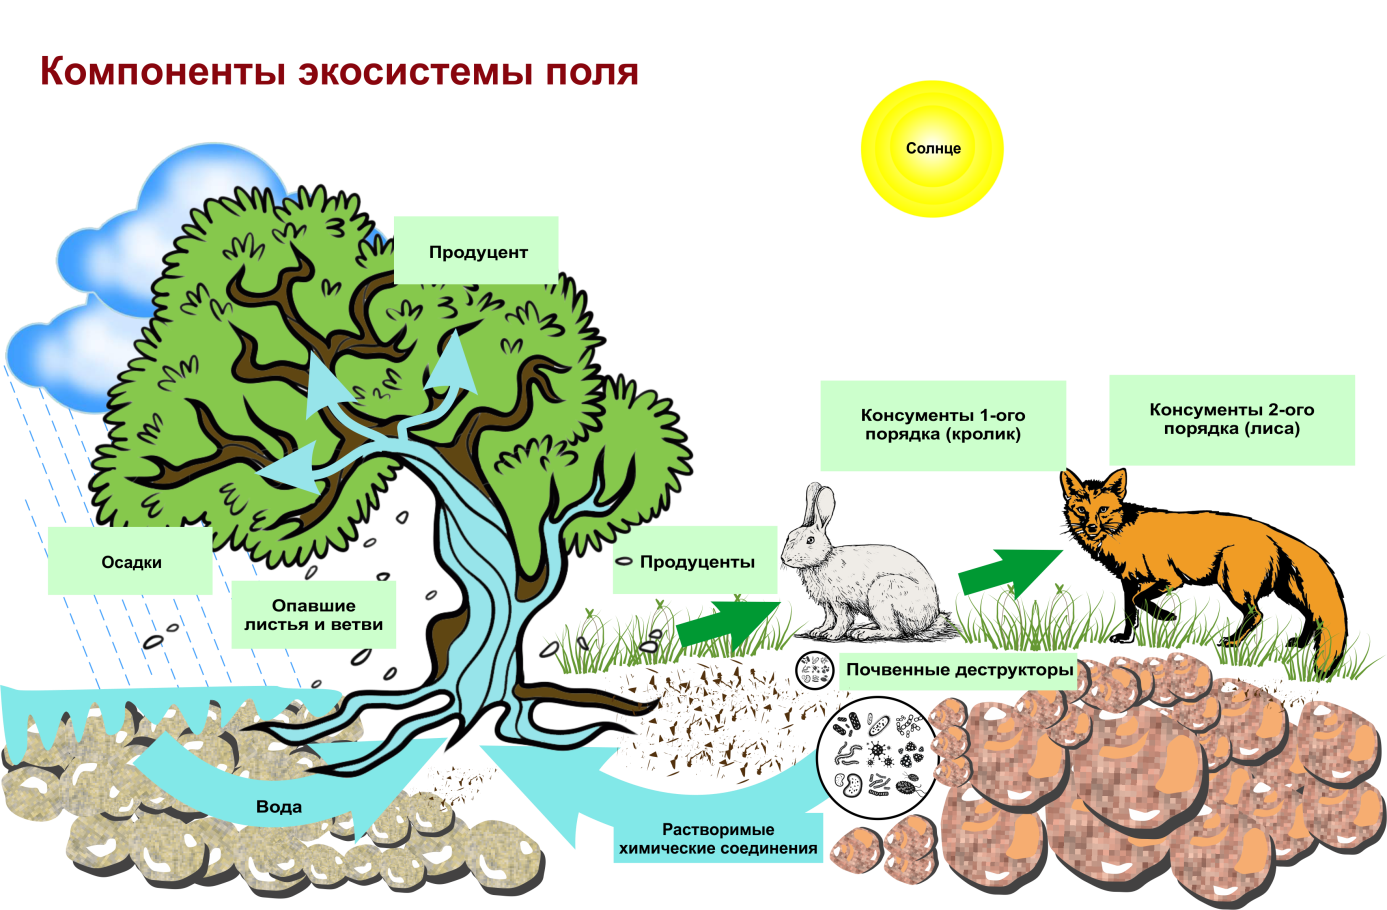 Обитатели природной экосистемы. Структура биогеоценоза и экосистемы. Схема трофической структуры биоценоза широколиственного леса. Строение биогеоценоза экосистемы. Схема состава компонентов экосистемы.